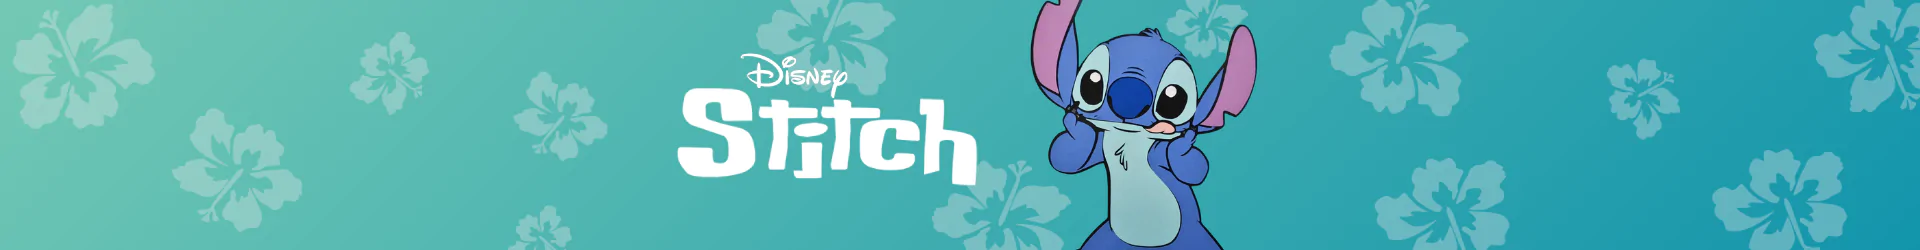 Stitch írószerek banner